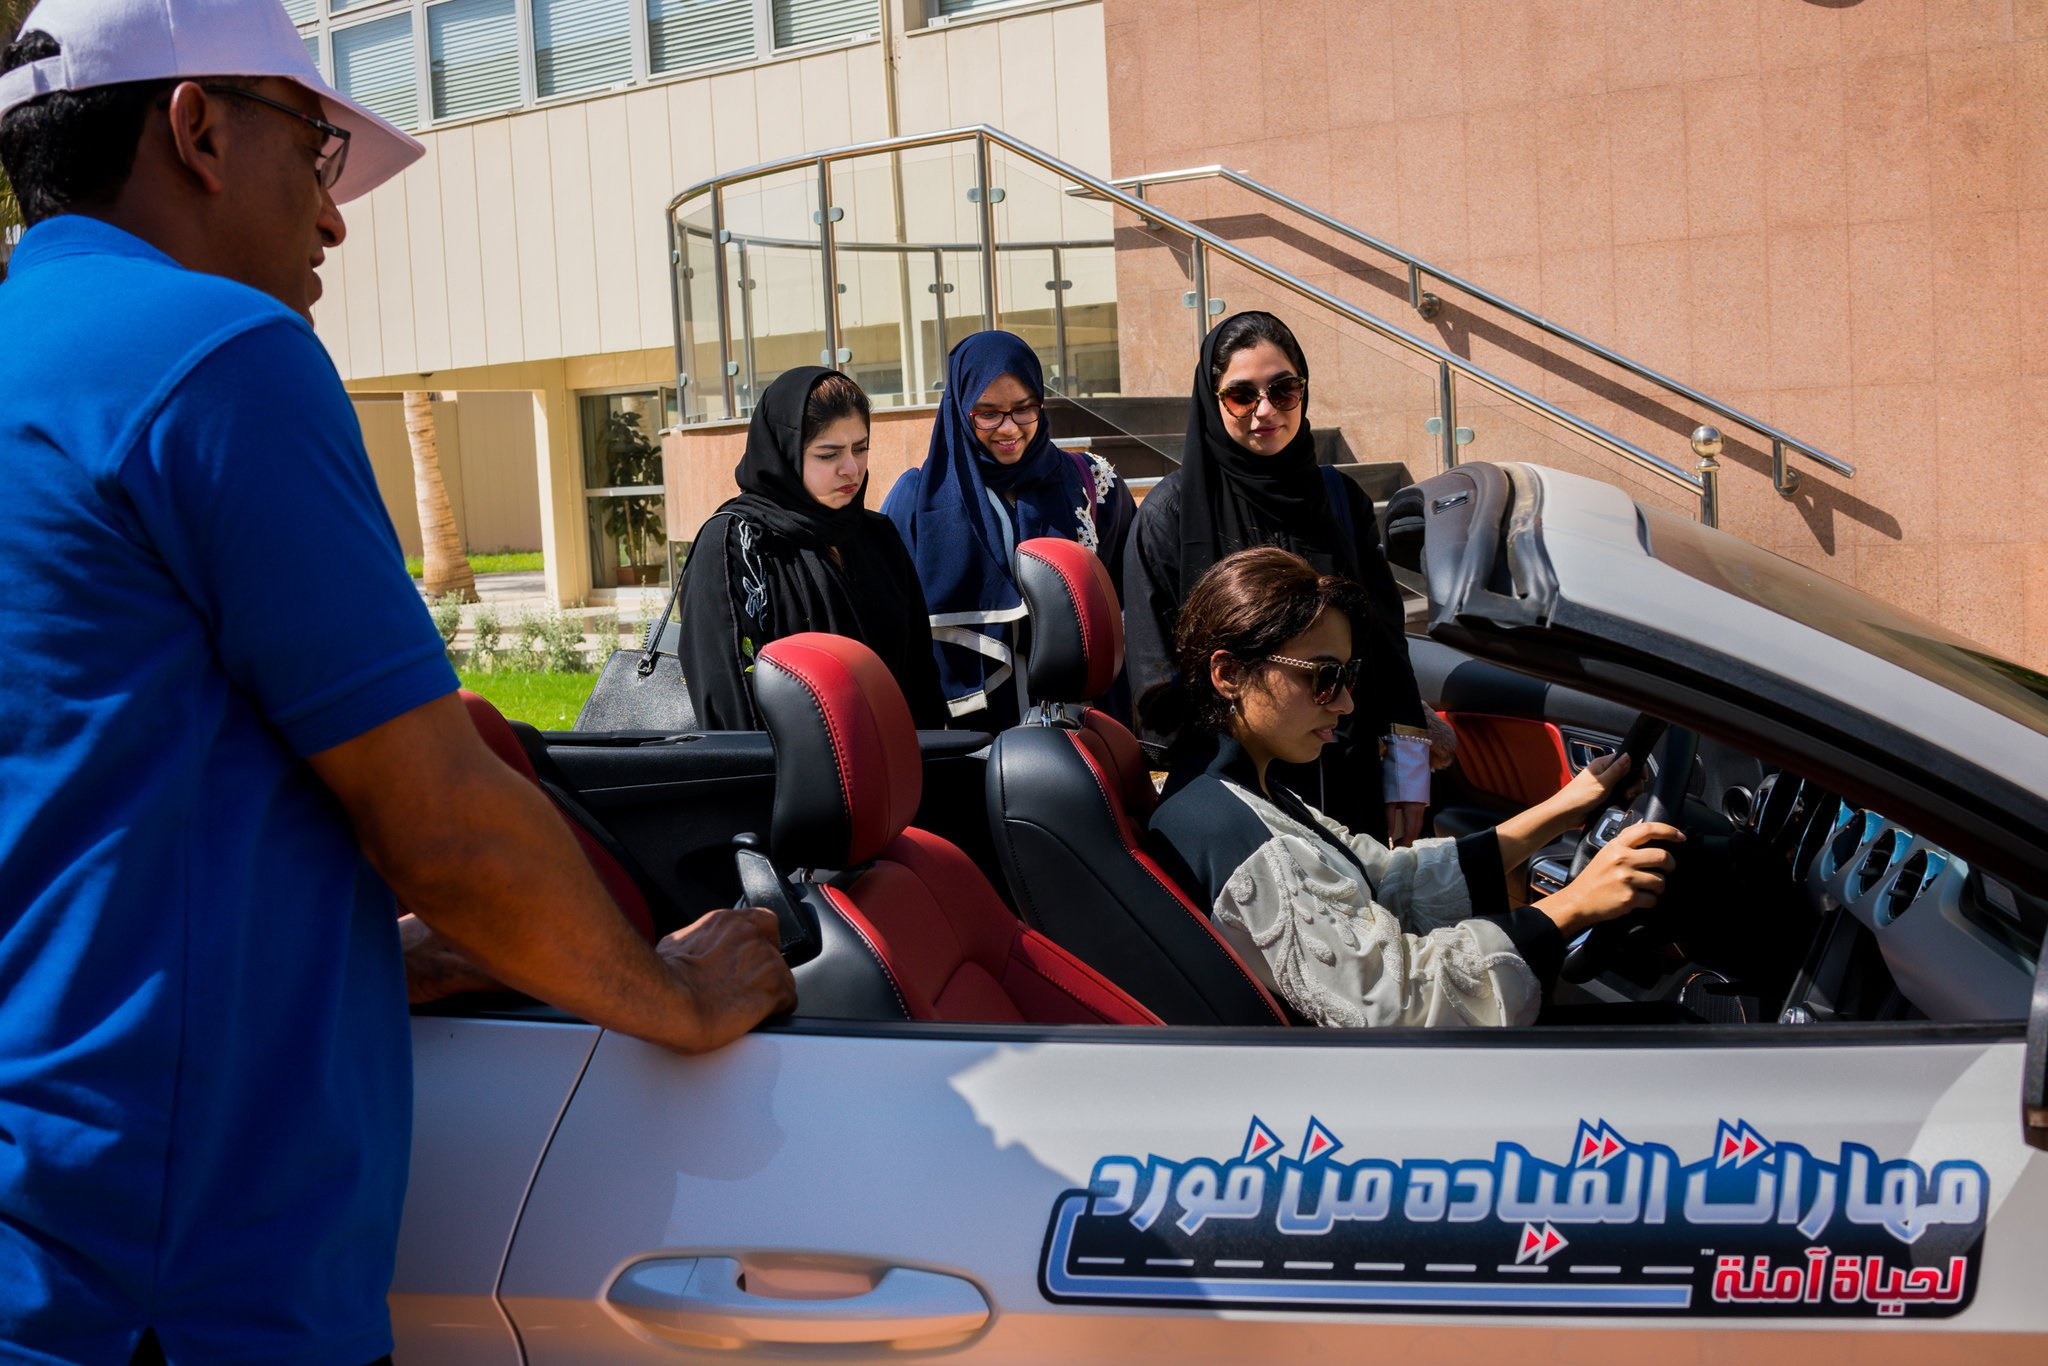 18 3 7 111130merlin 135047898 b1aaac8c 82c4 4a08 a0e9 a4b79c16c380 superJumbo - رانندگی علیه مردسالاری | یک زن سعودی: بهترین قسمت رانندگی داشتن حس آزادی است -